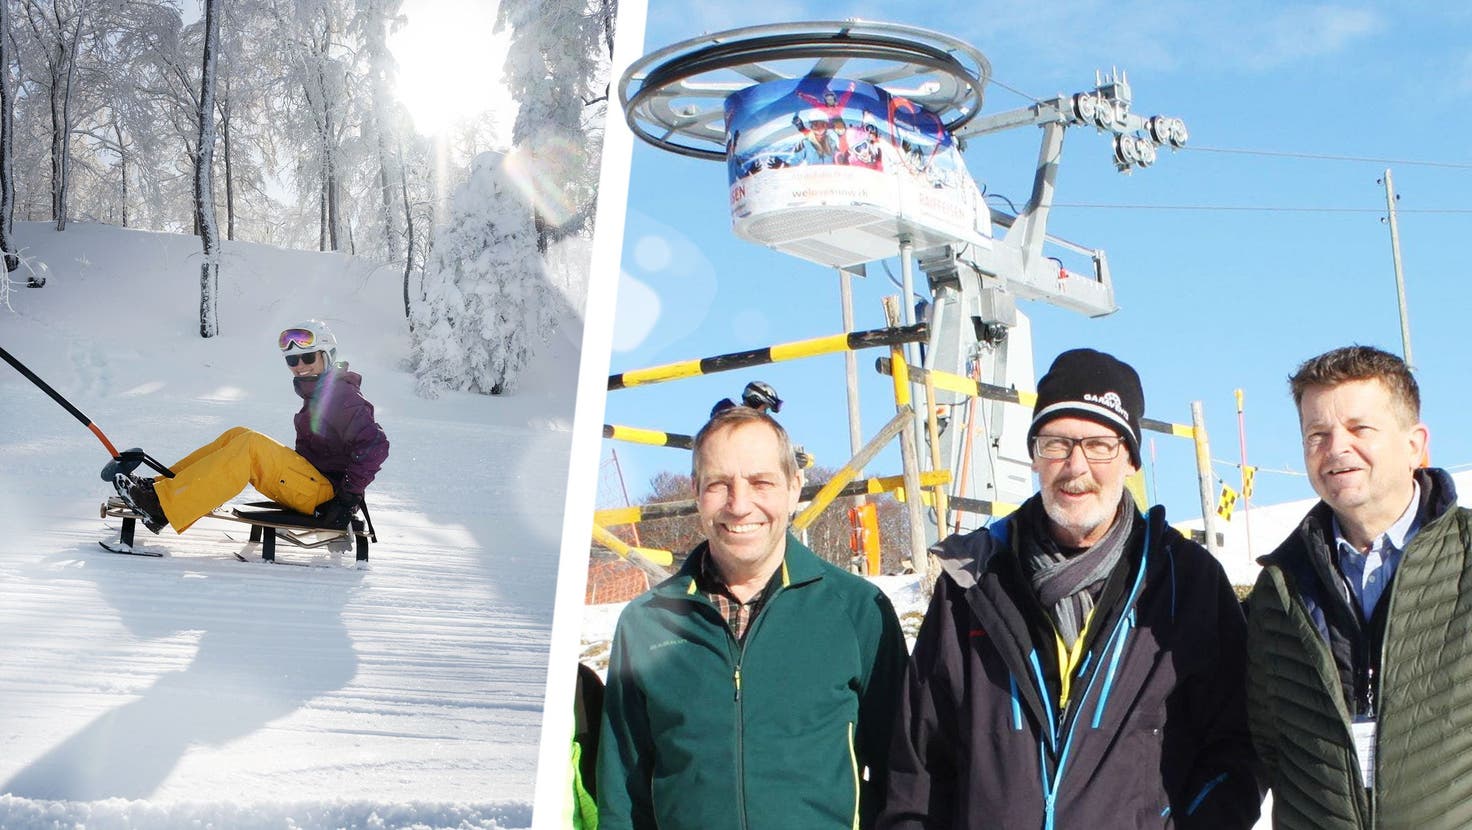 Verwaltungsrat der Skilift Grenchen AG (von links): Marc Schneider, Patrik Mosimann, Adrian Csloviecsek, Christoph Rauber (Präsident), Pascale Ris und Luca Rauber. (Andreas Toggweiler)